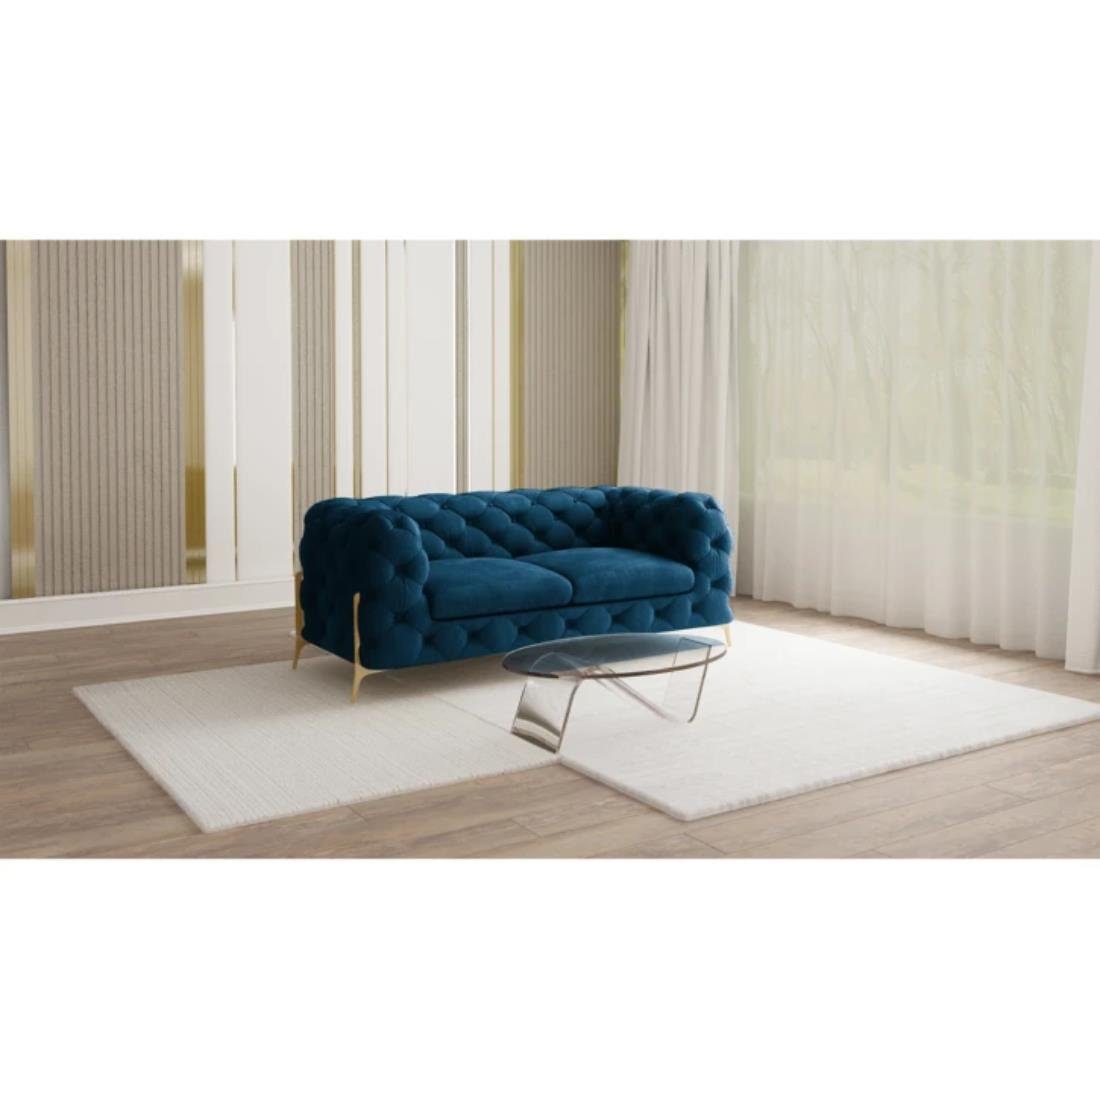 2-Sitzer Wellenfederung Sofa Ashley Metall Marineblau Goldene mit Möbel Füßen, Chesterfield S-Style mit